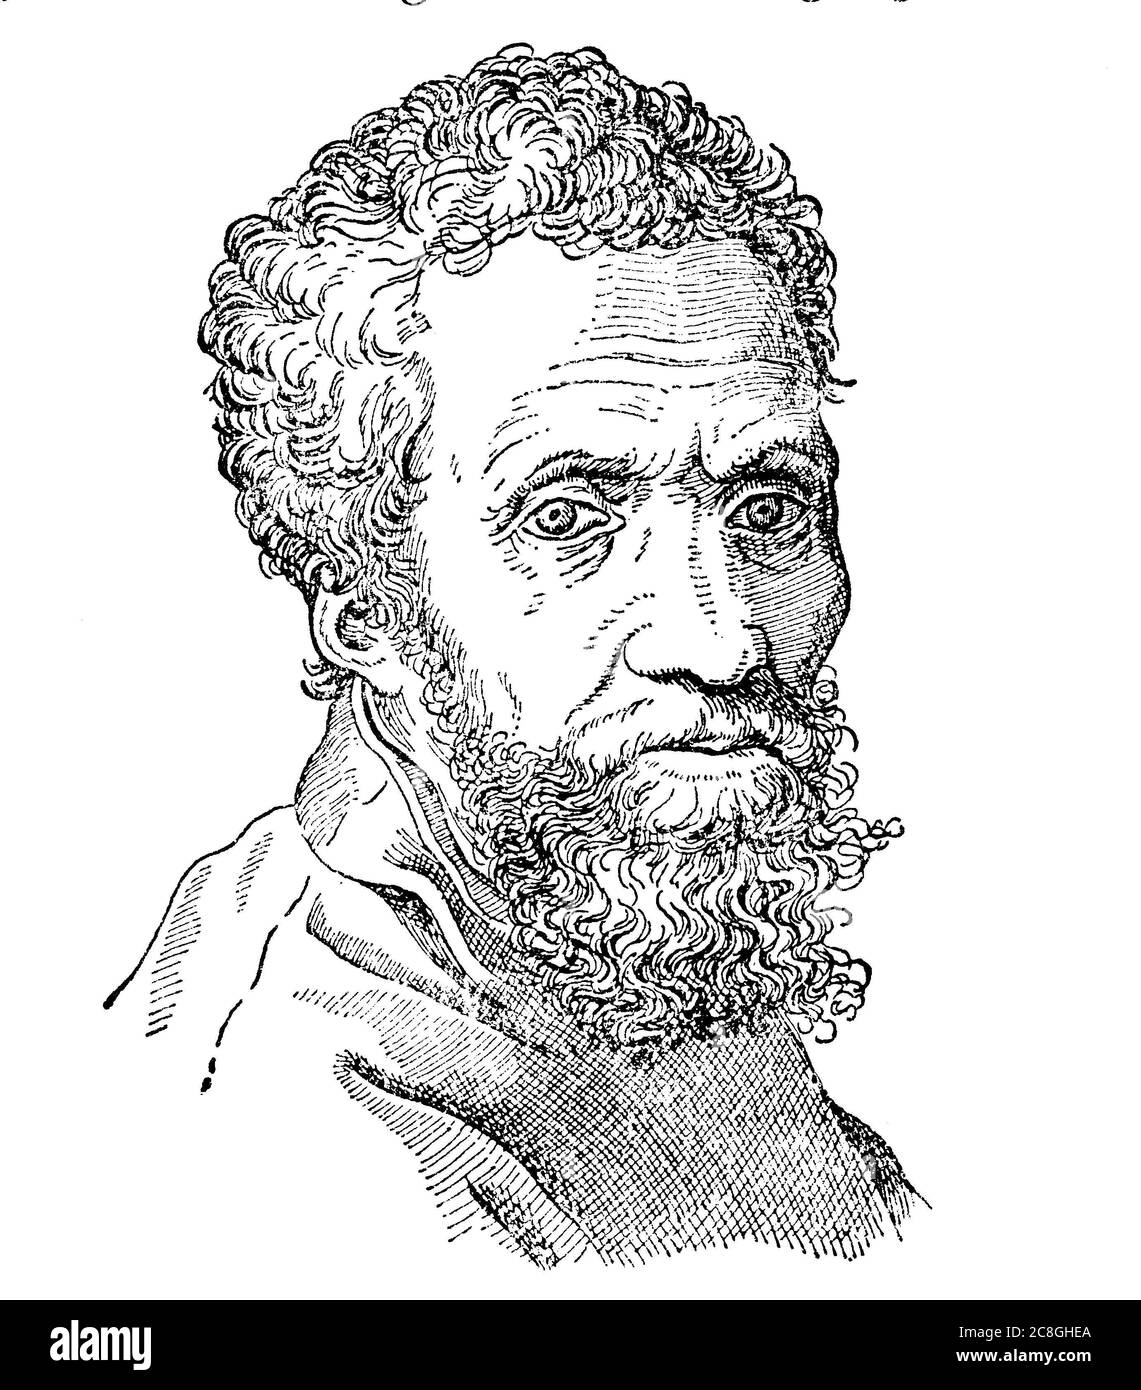 Michelangelo di Lodovico Buonarroti Simoni oder besser bekannt unter seinem Vornamen Michelangelo, italienischer Bildhauer, Maler, Architekt und Dichter von Stockfoto